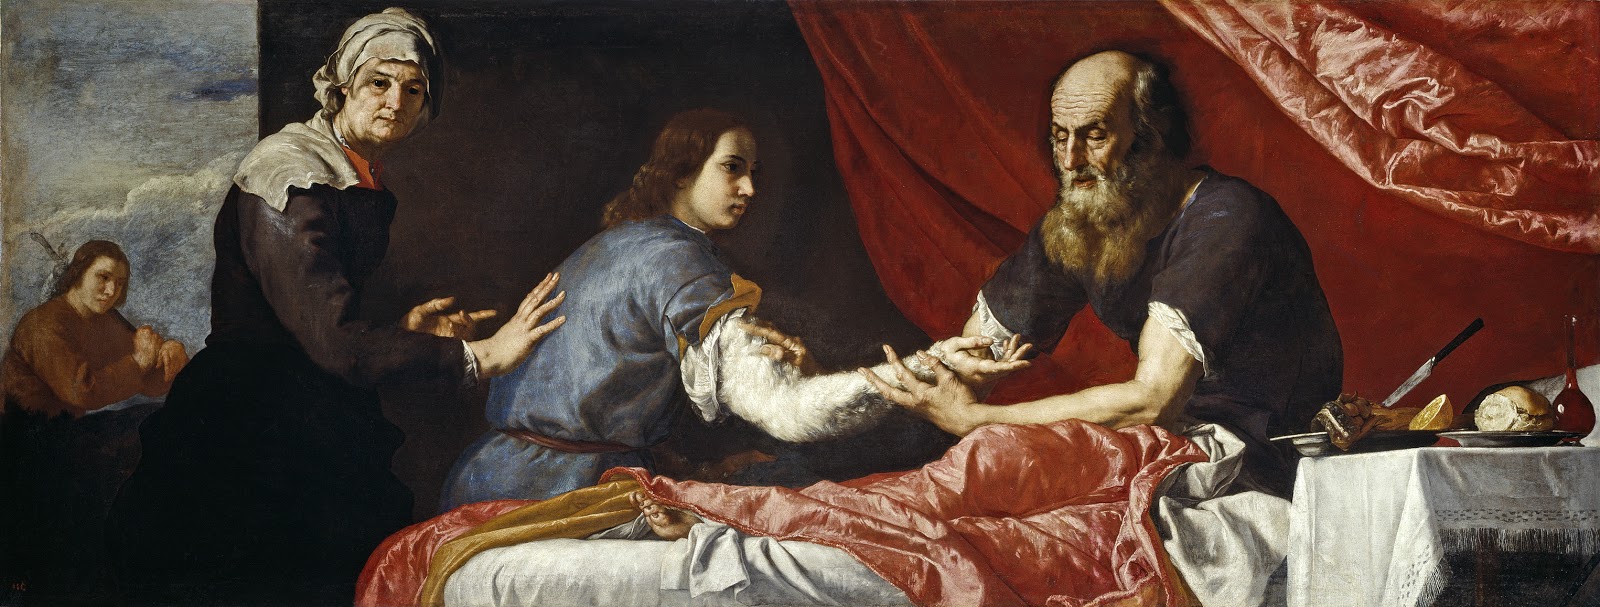 Jusepe+de+Ribera-1591-1652 (24).jpg